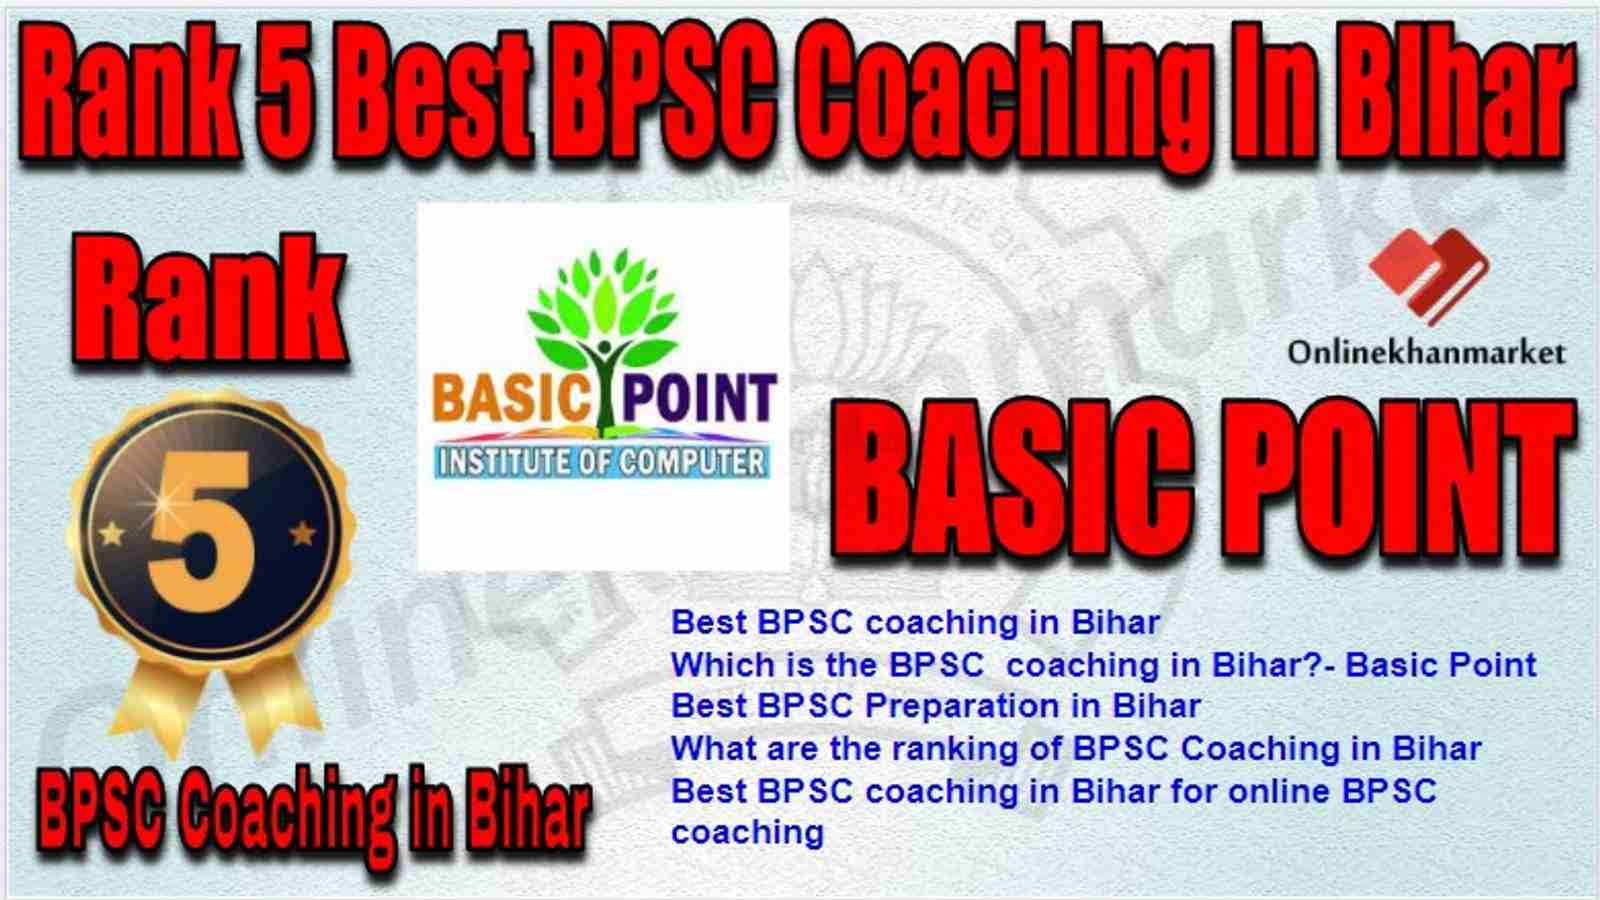 Rank 5 Best BPSC Coaching in bihar